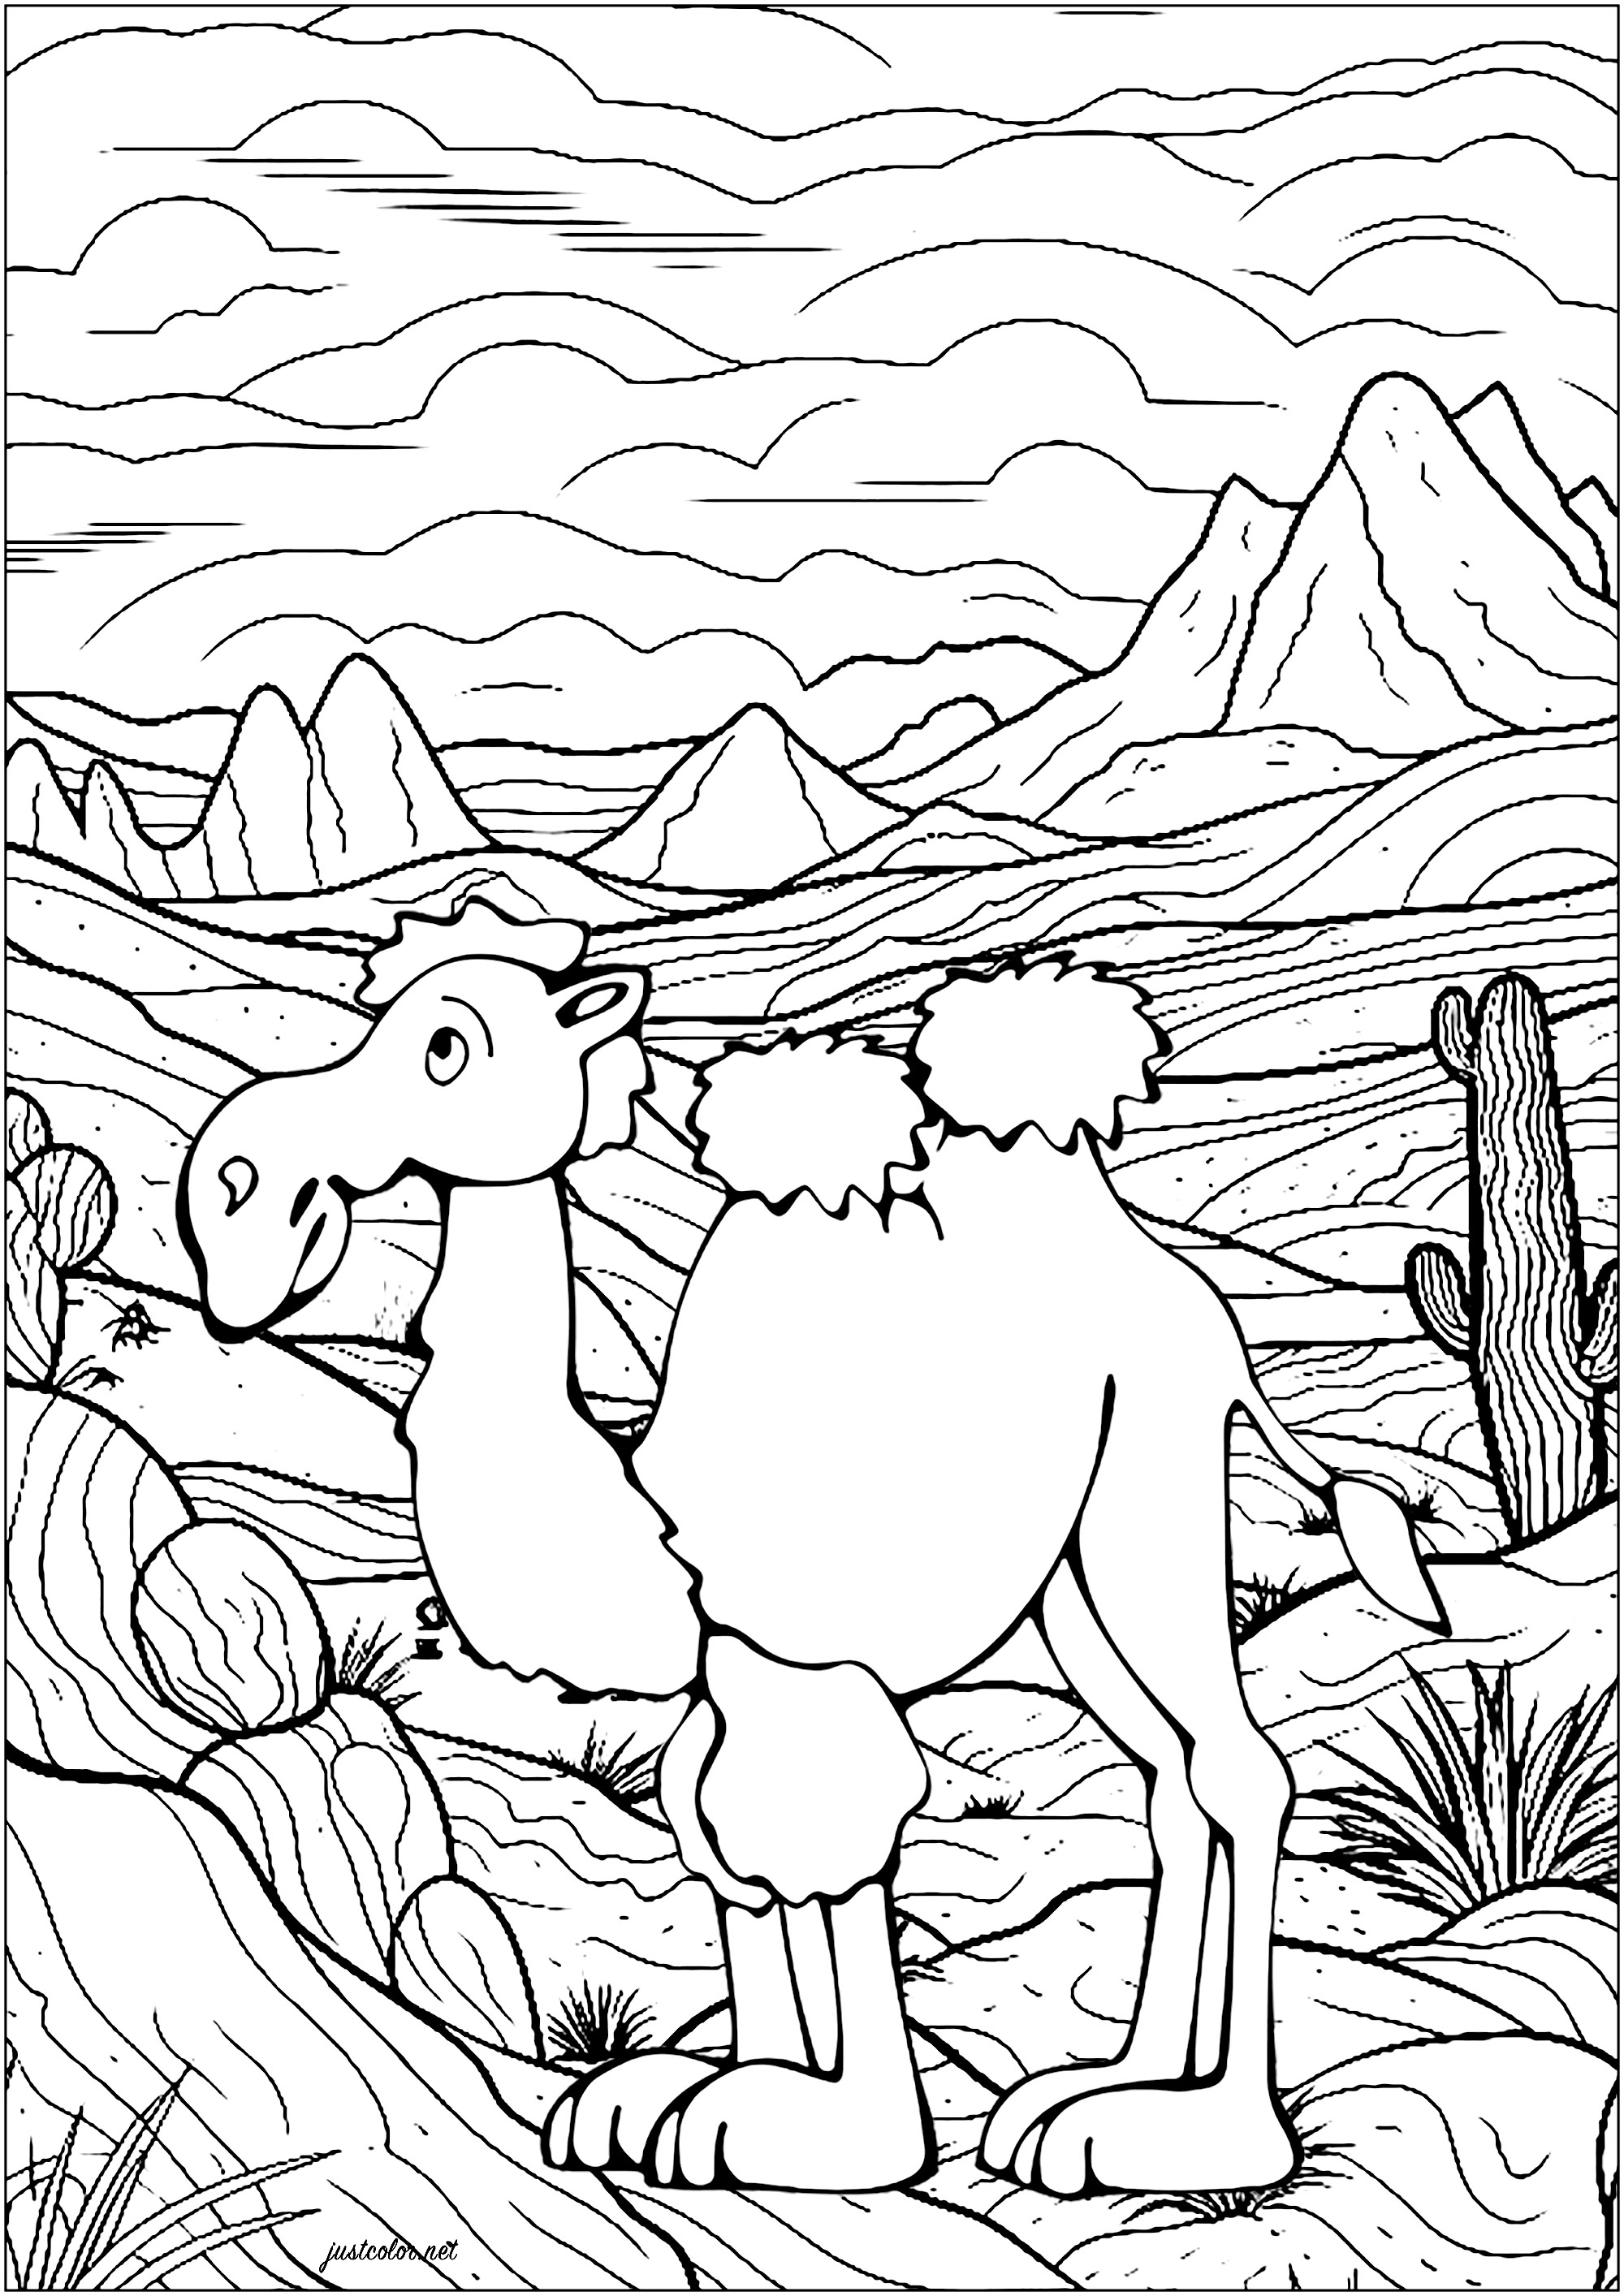 Kamel in der Wüste. Ausmalen eines Kamels in der Wüste, mit vielen Details im Hintergrund: Berge, Kakteen, bewölkter Himmel ...